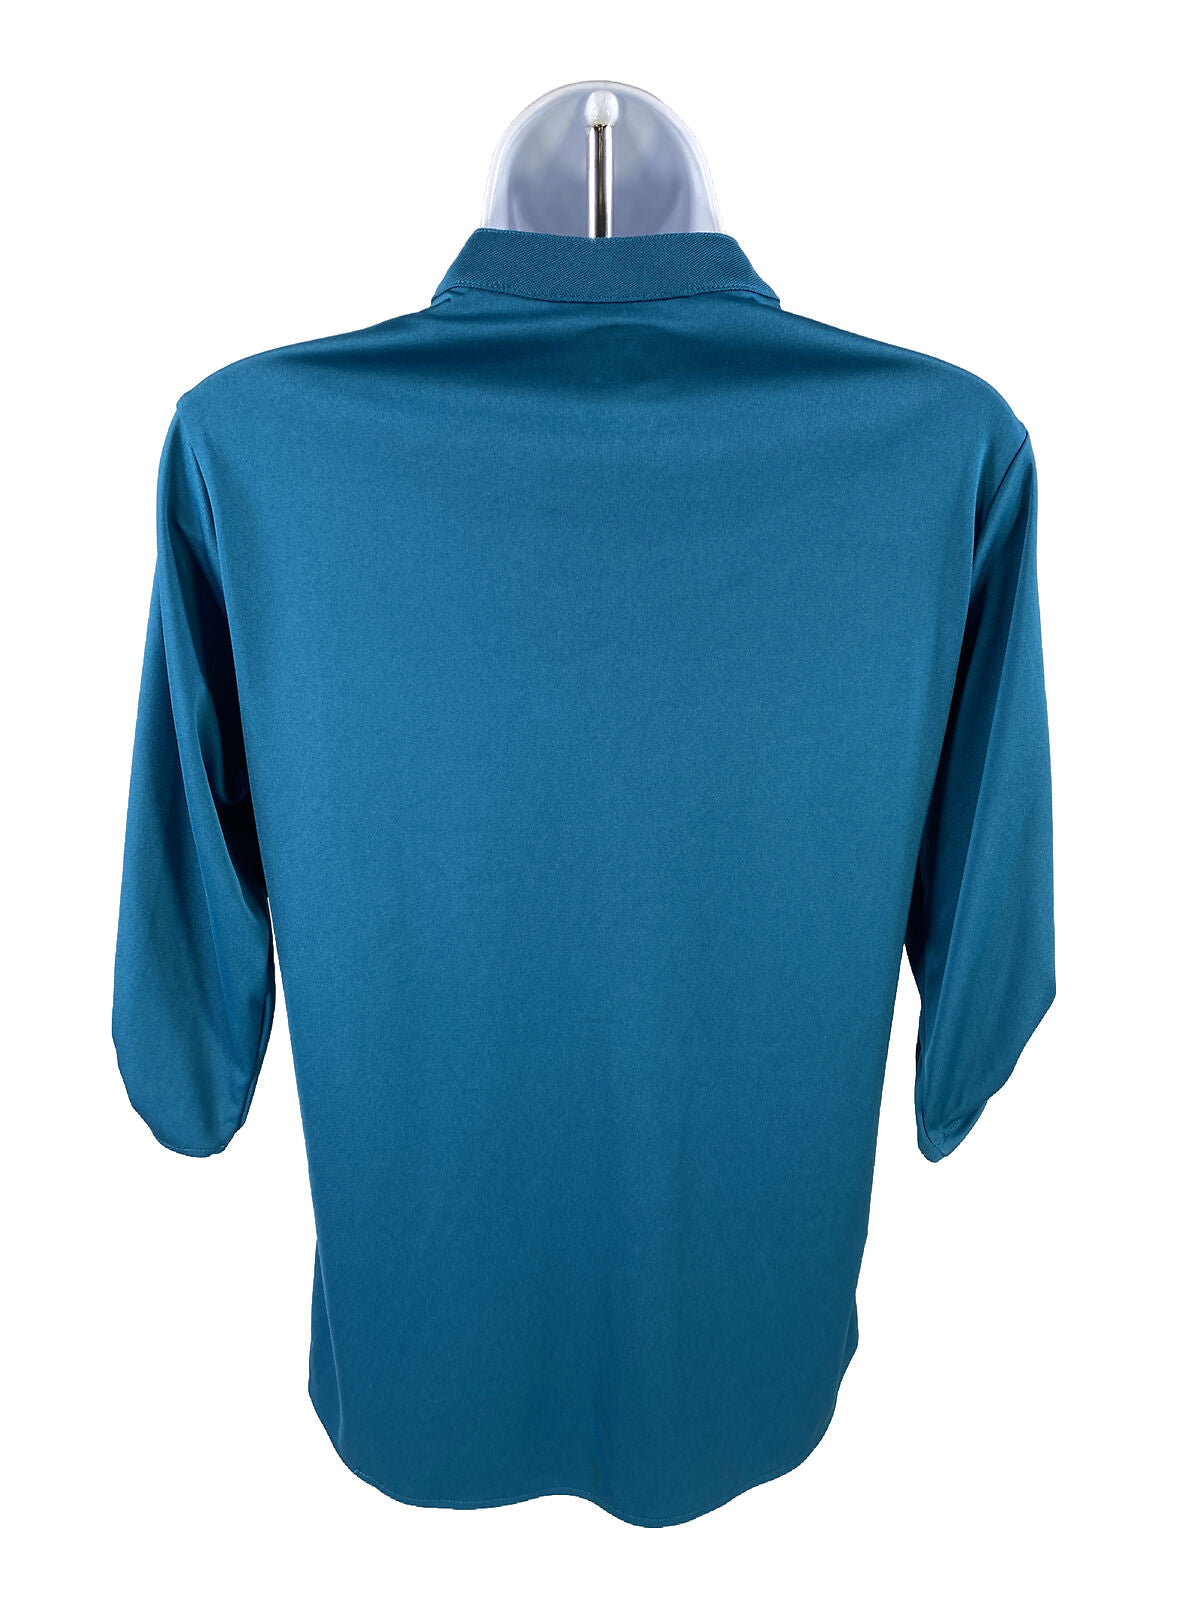 NUEVA OGIO Camiseta henley atlética de manga 3/4 azul para mujer - M